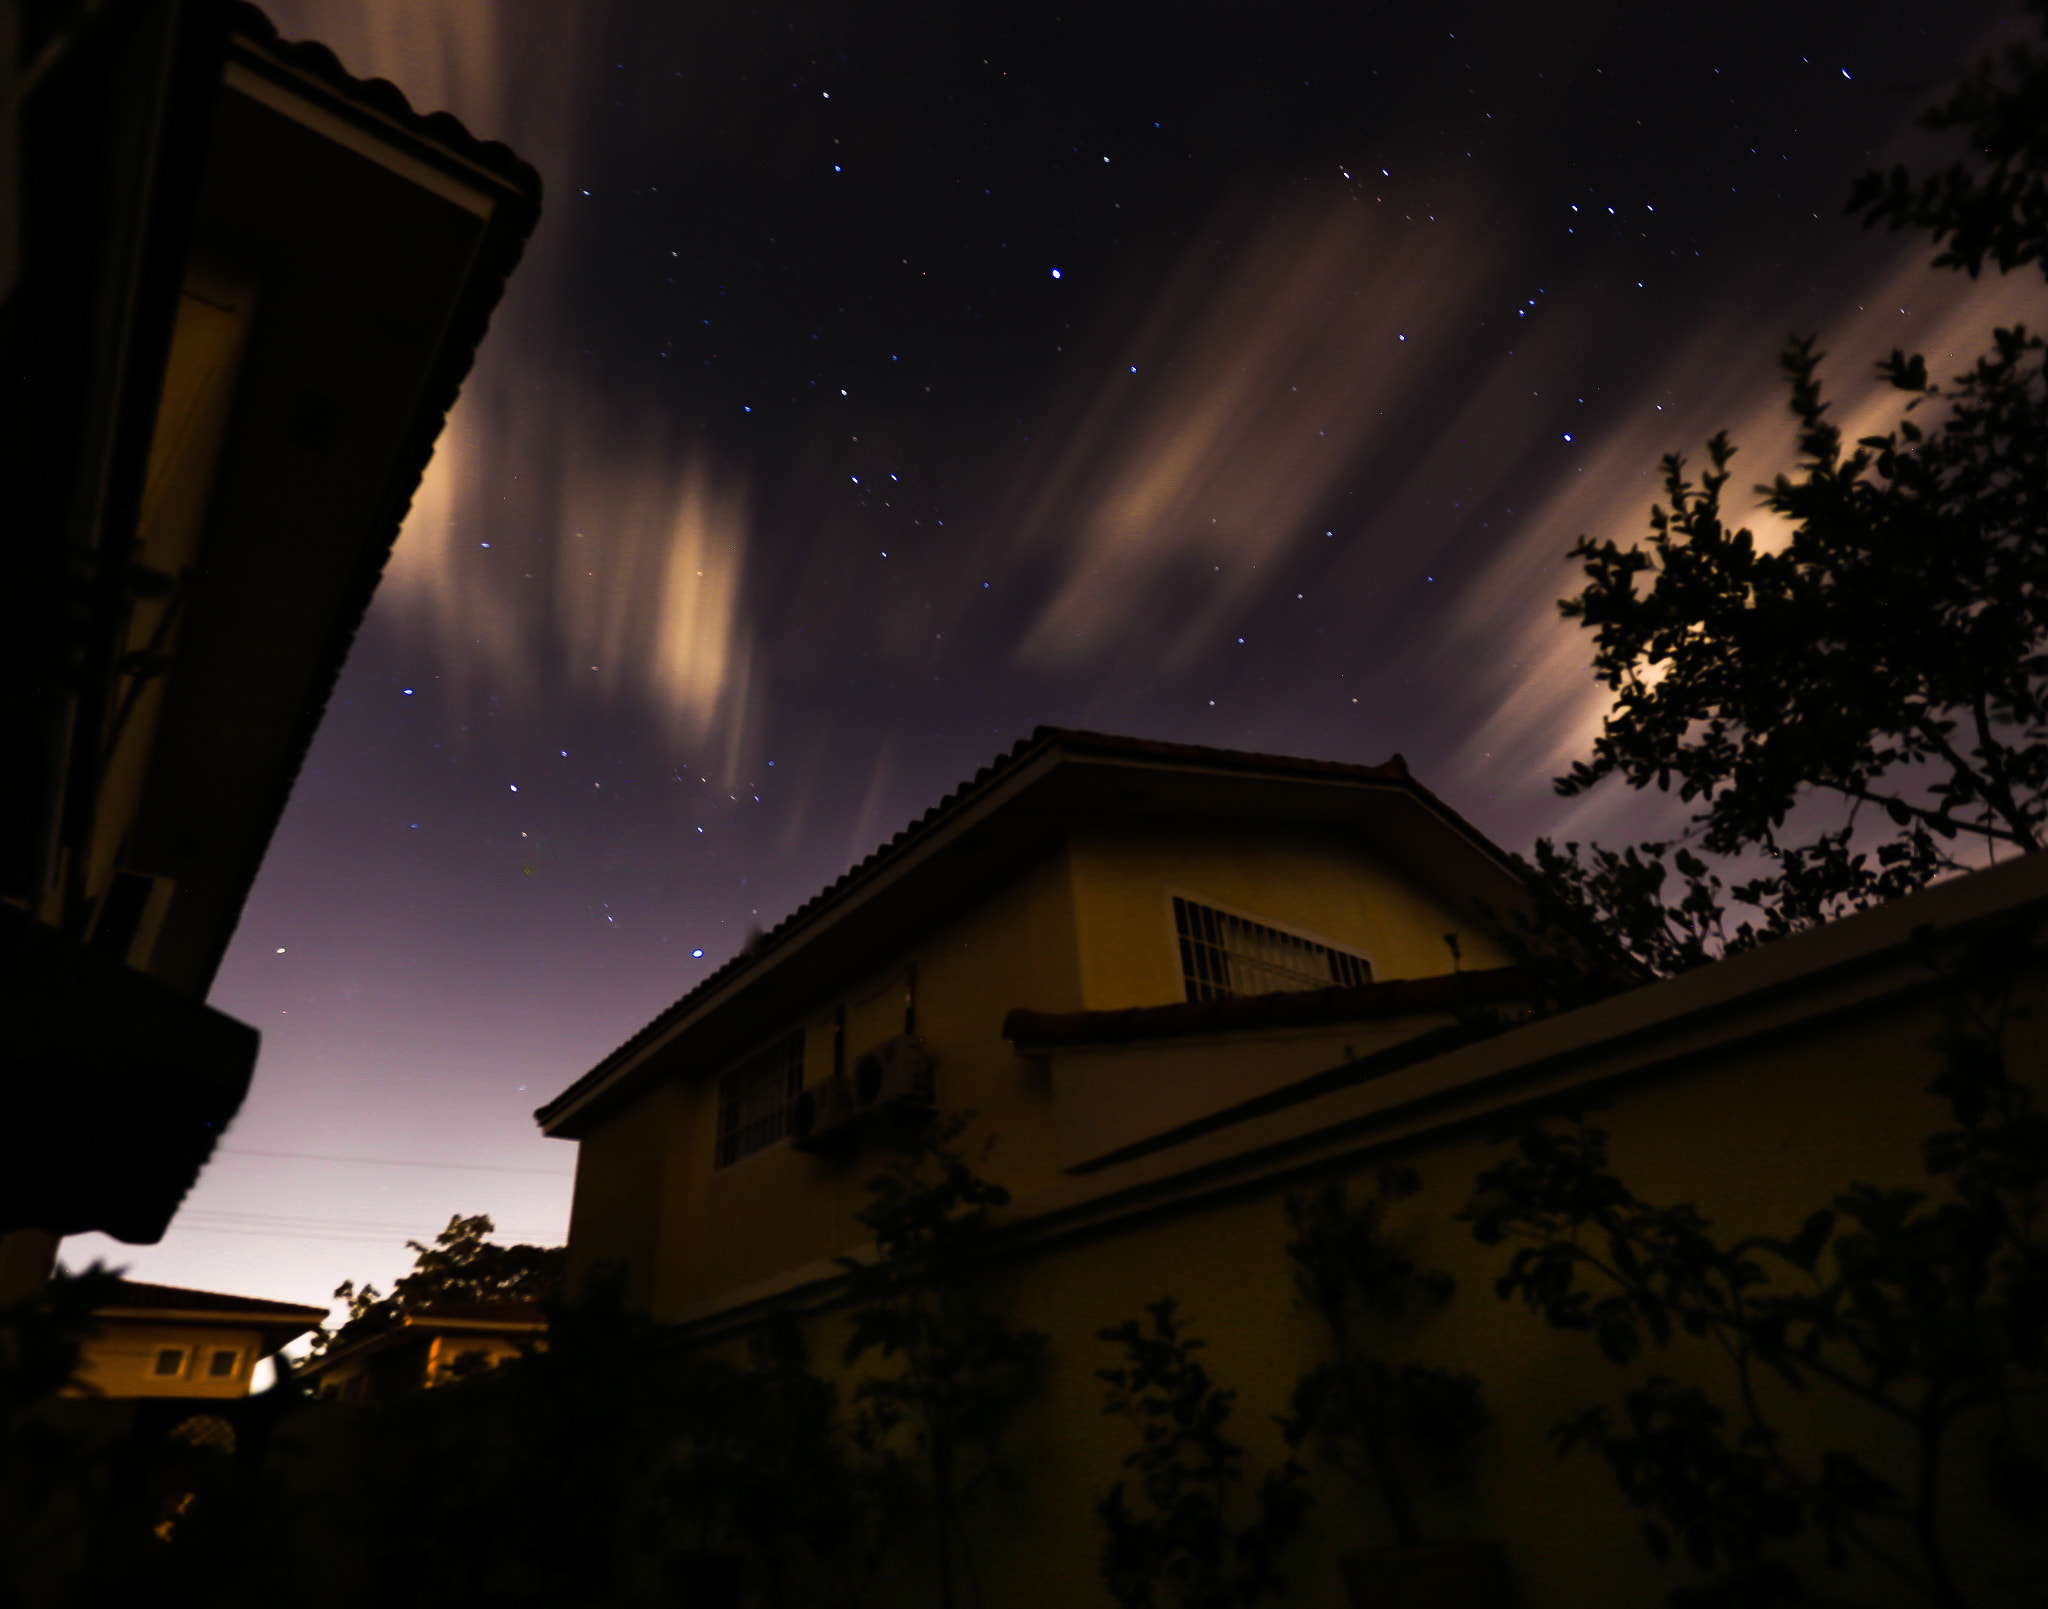 Canon EOS 6D sample photo. Noche oscura, sin electricidad photography